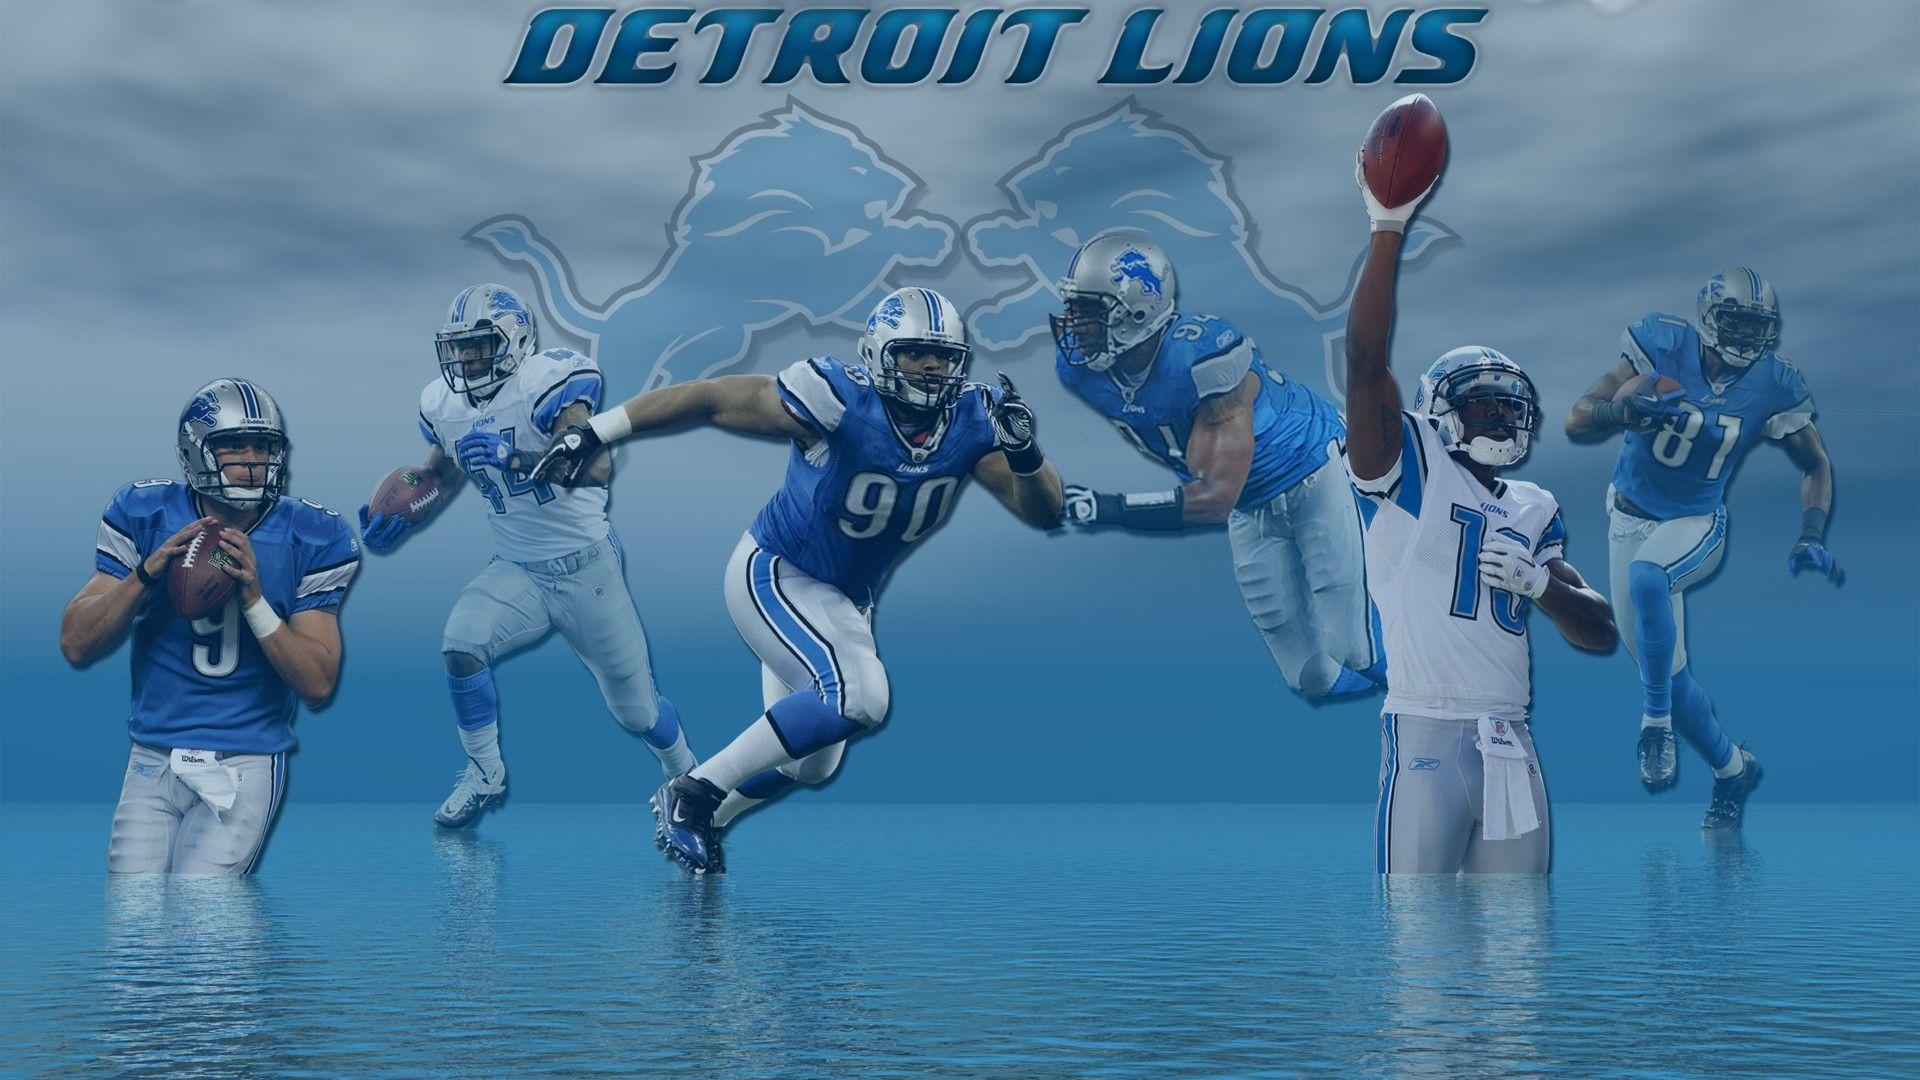 Detroit Lions For PC Wallpaper. Detroit lions, Detroit